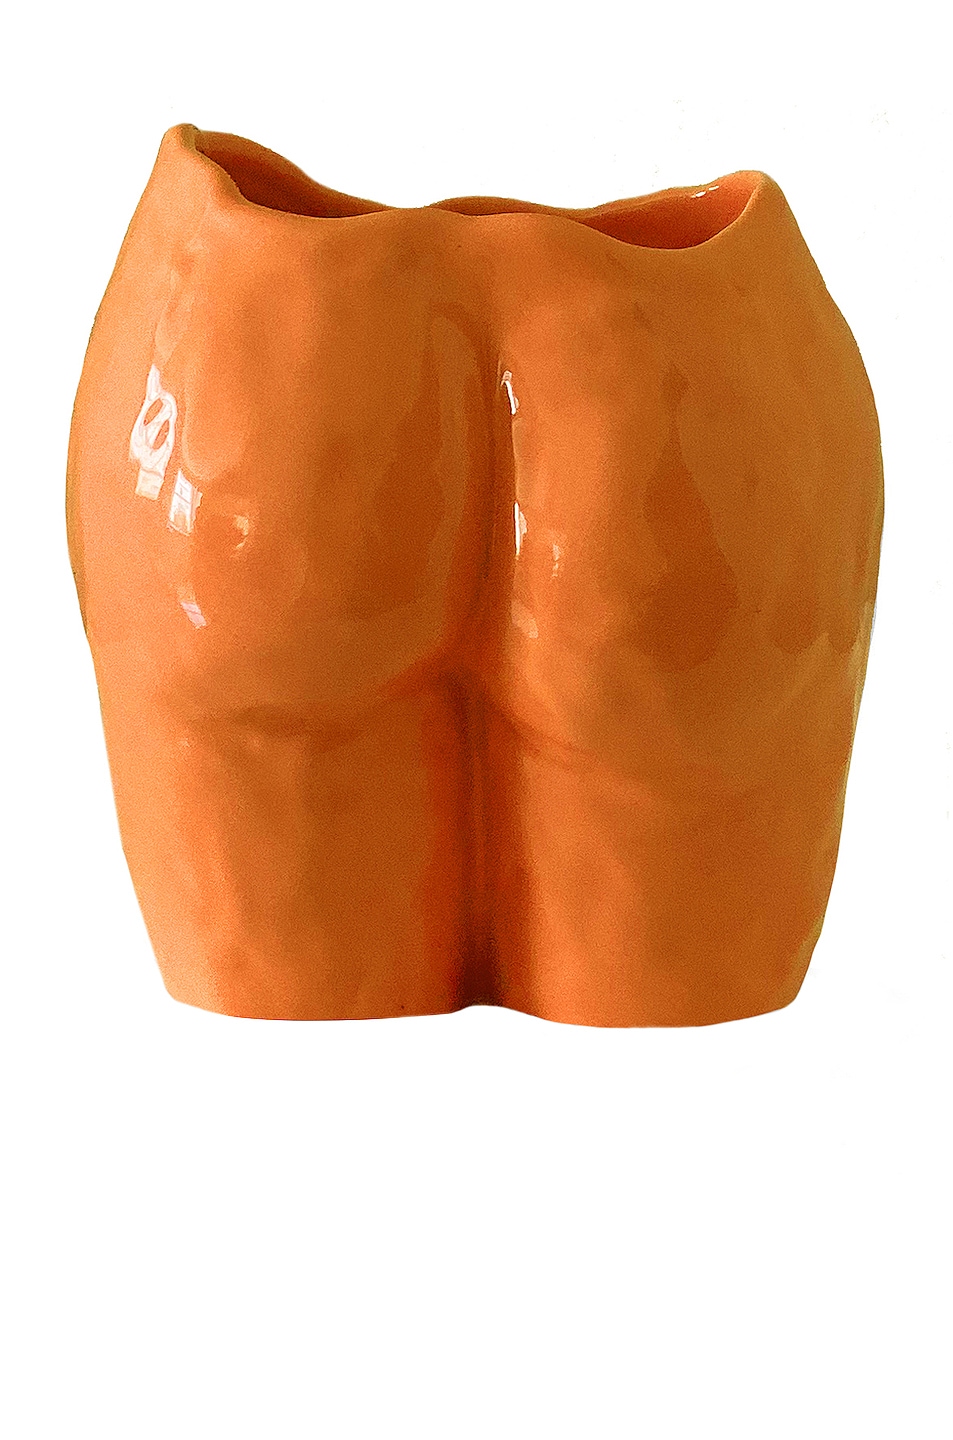 Image 1 of Anissa Kermiche Popotin Vase in Orange Shiny